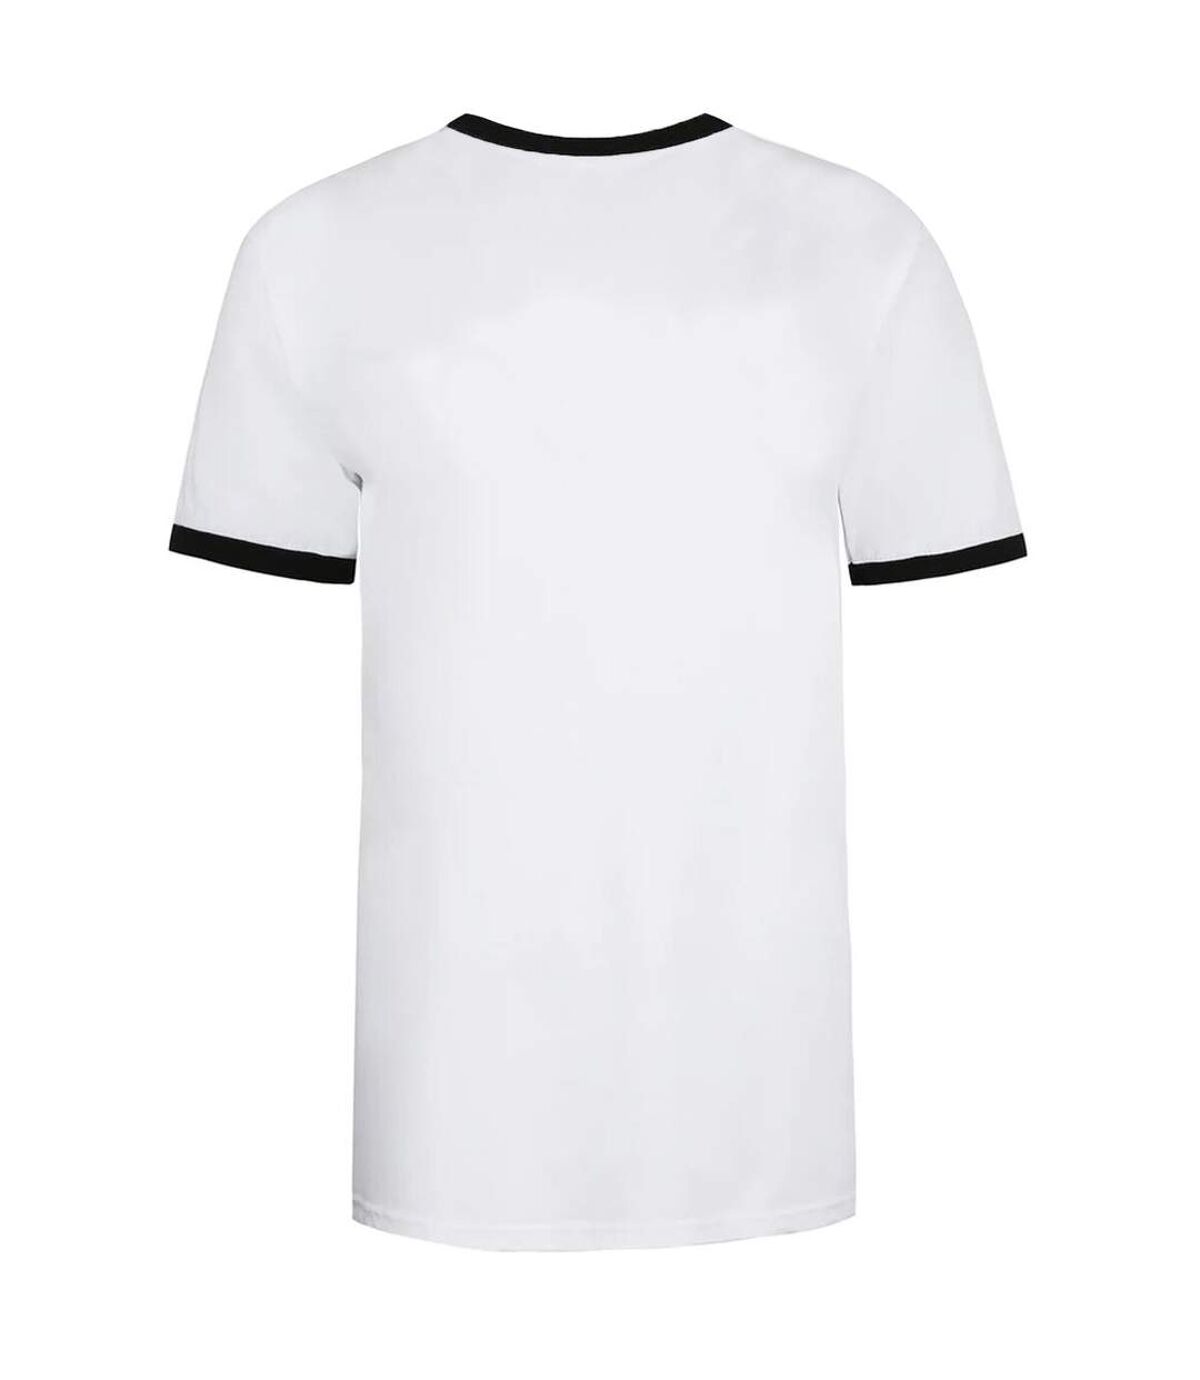 Friends - T-shirt - Femme (Blanc / Noir) - UTTV1103